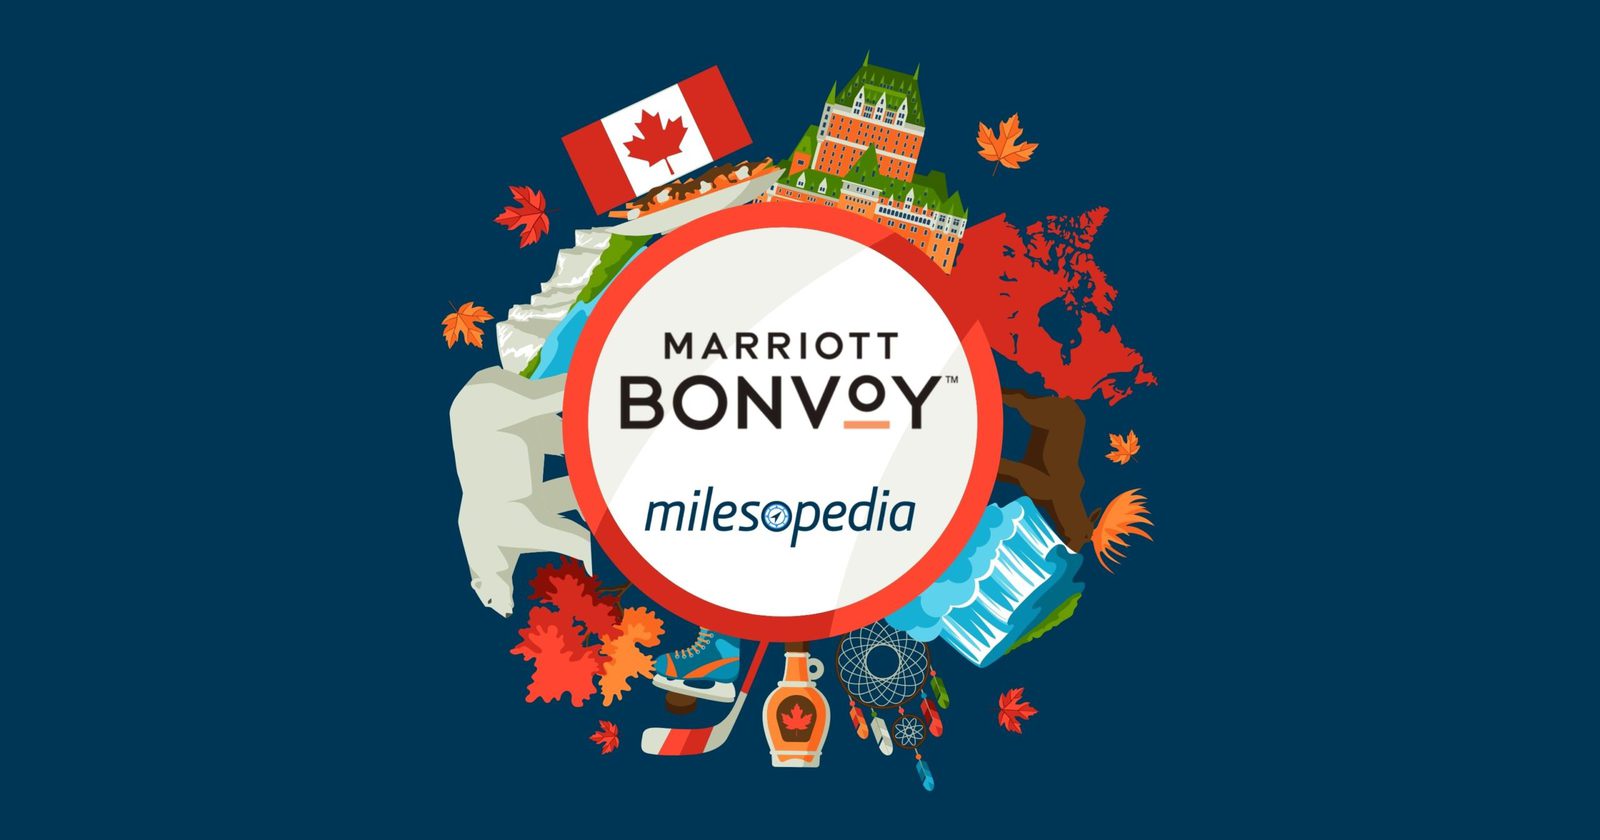 Bonvoy marriott Last Minute